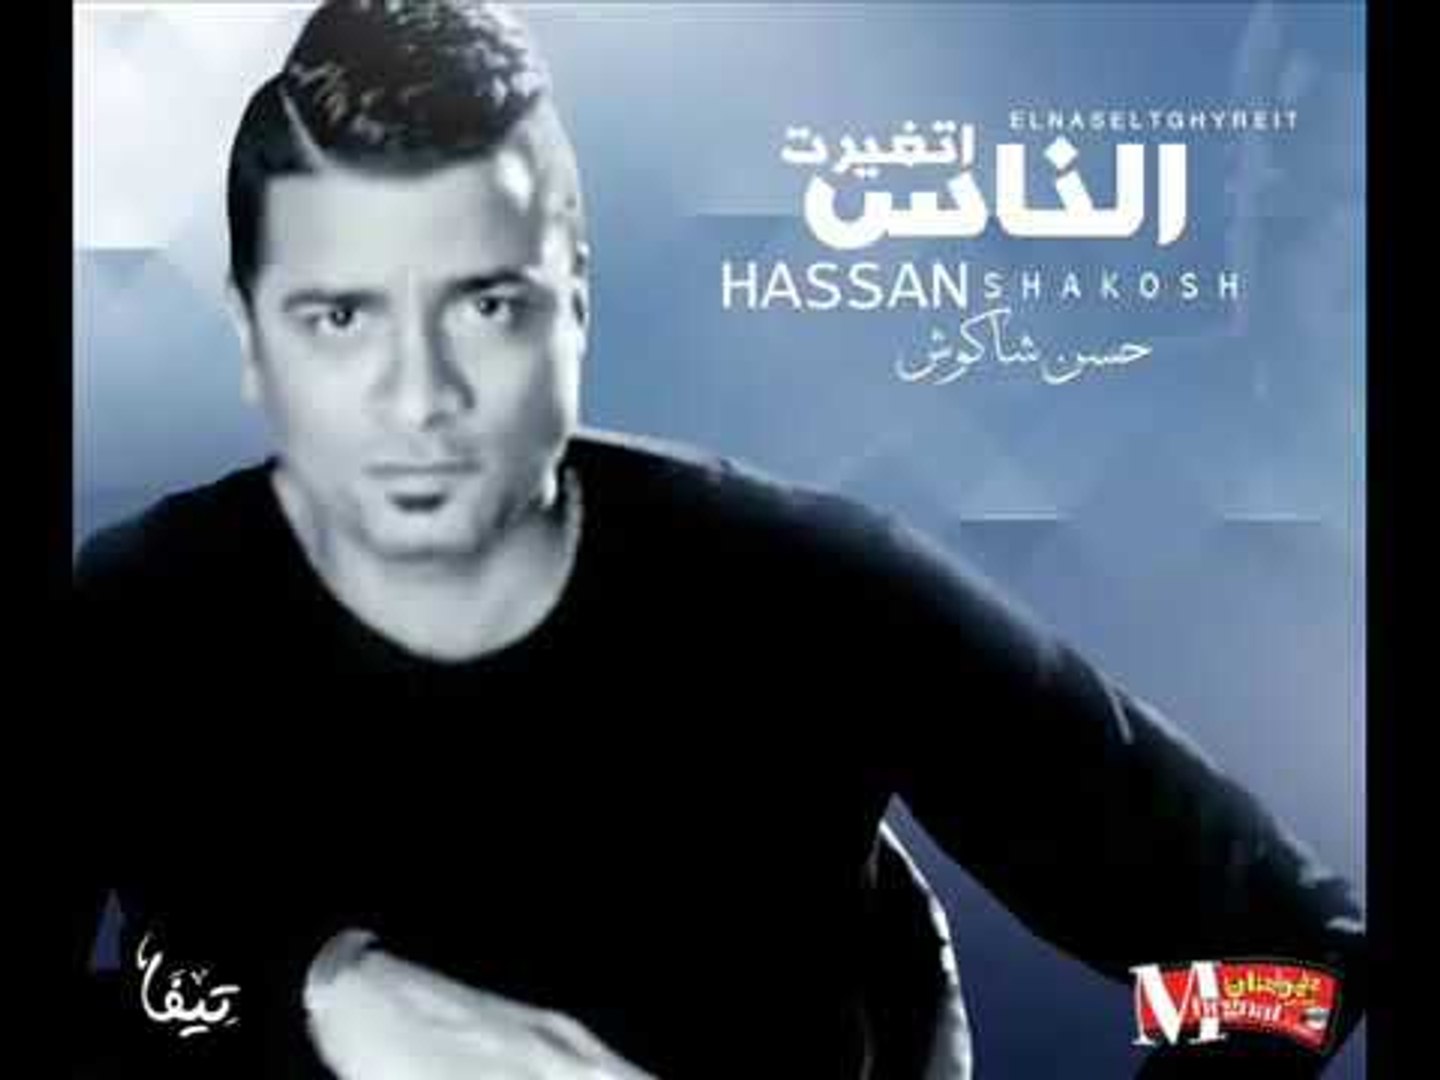 حسن شاكوش اغنية الناس اتغيرت - فيديو Dailymotion